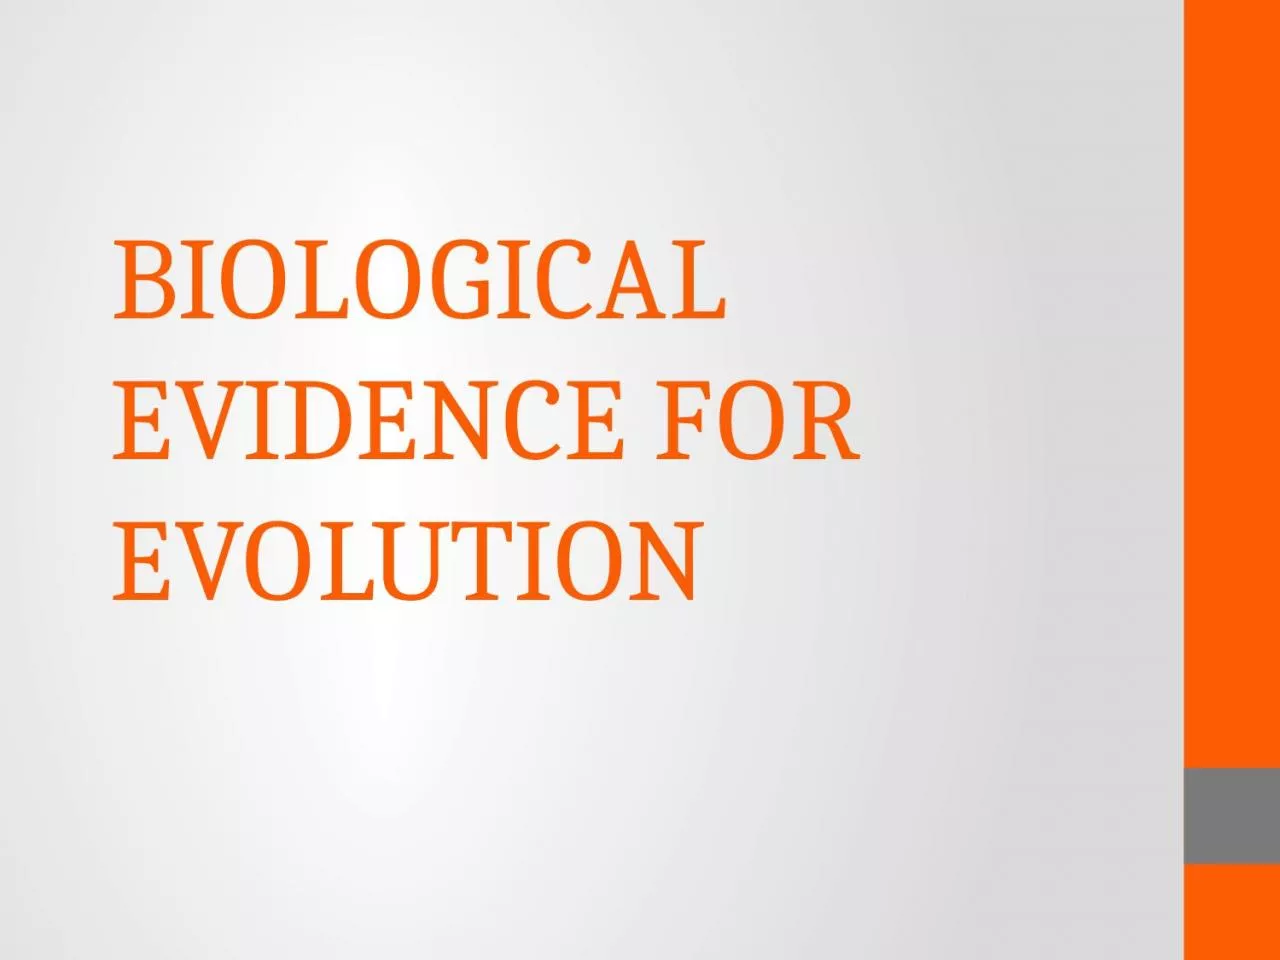 BIOLOGICAL EVIDENCE FOR EVOLUTION